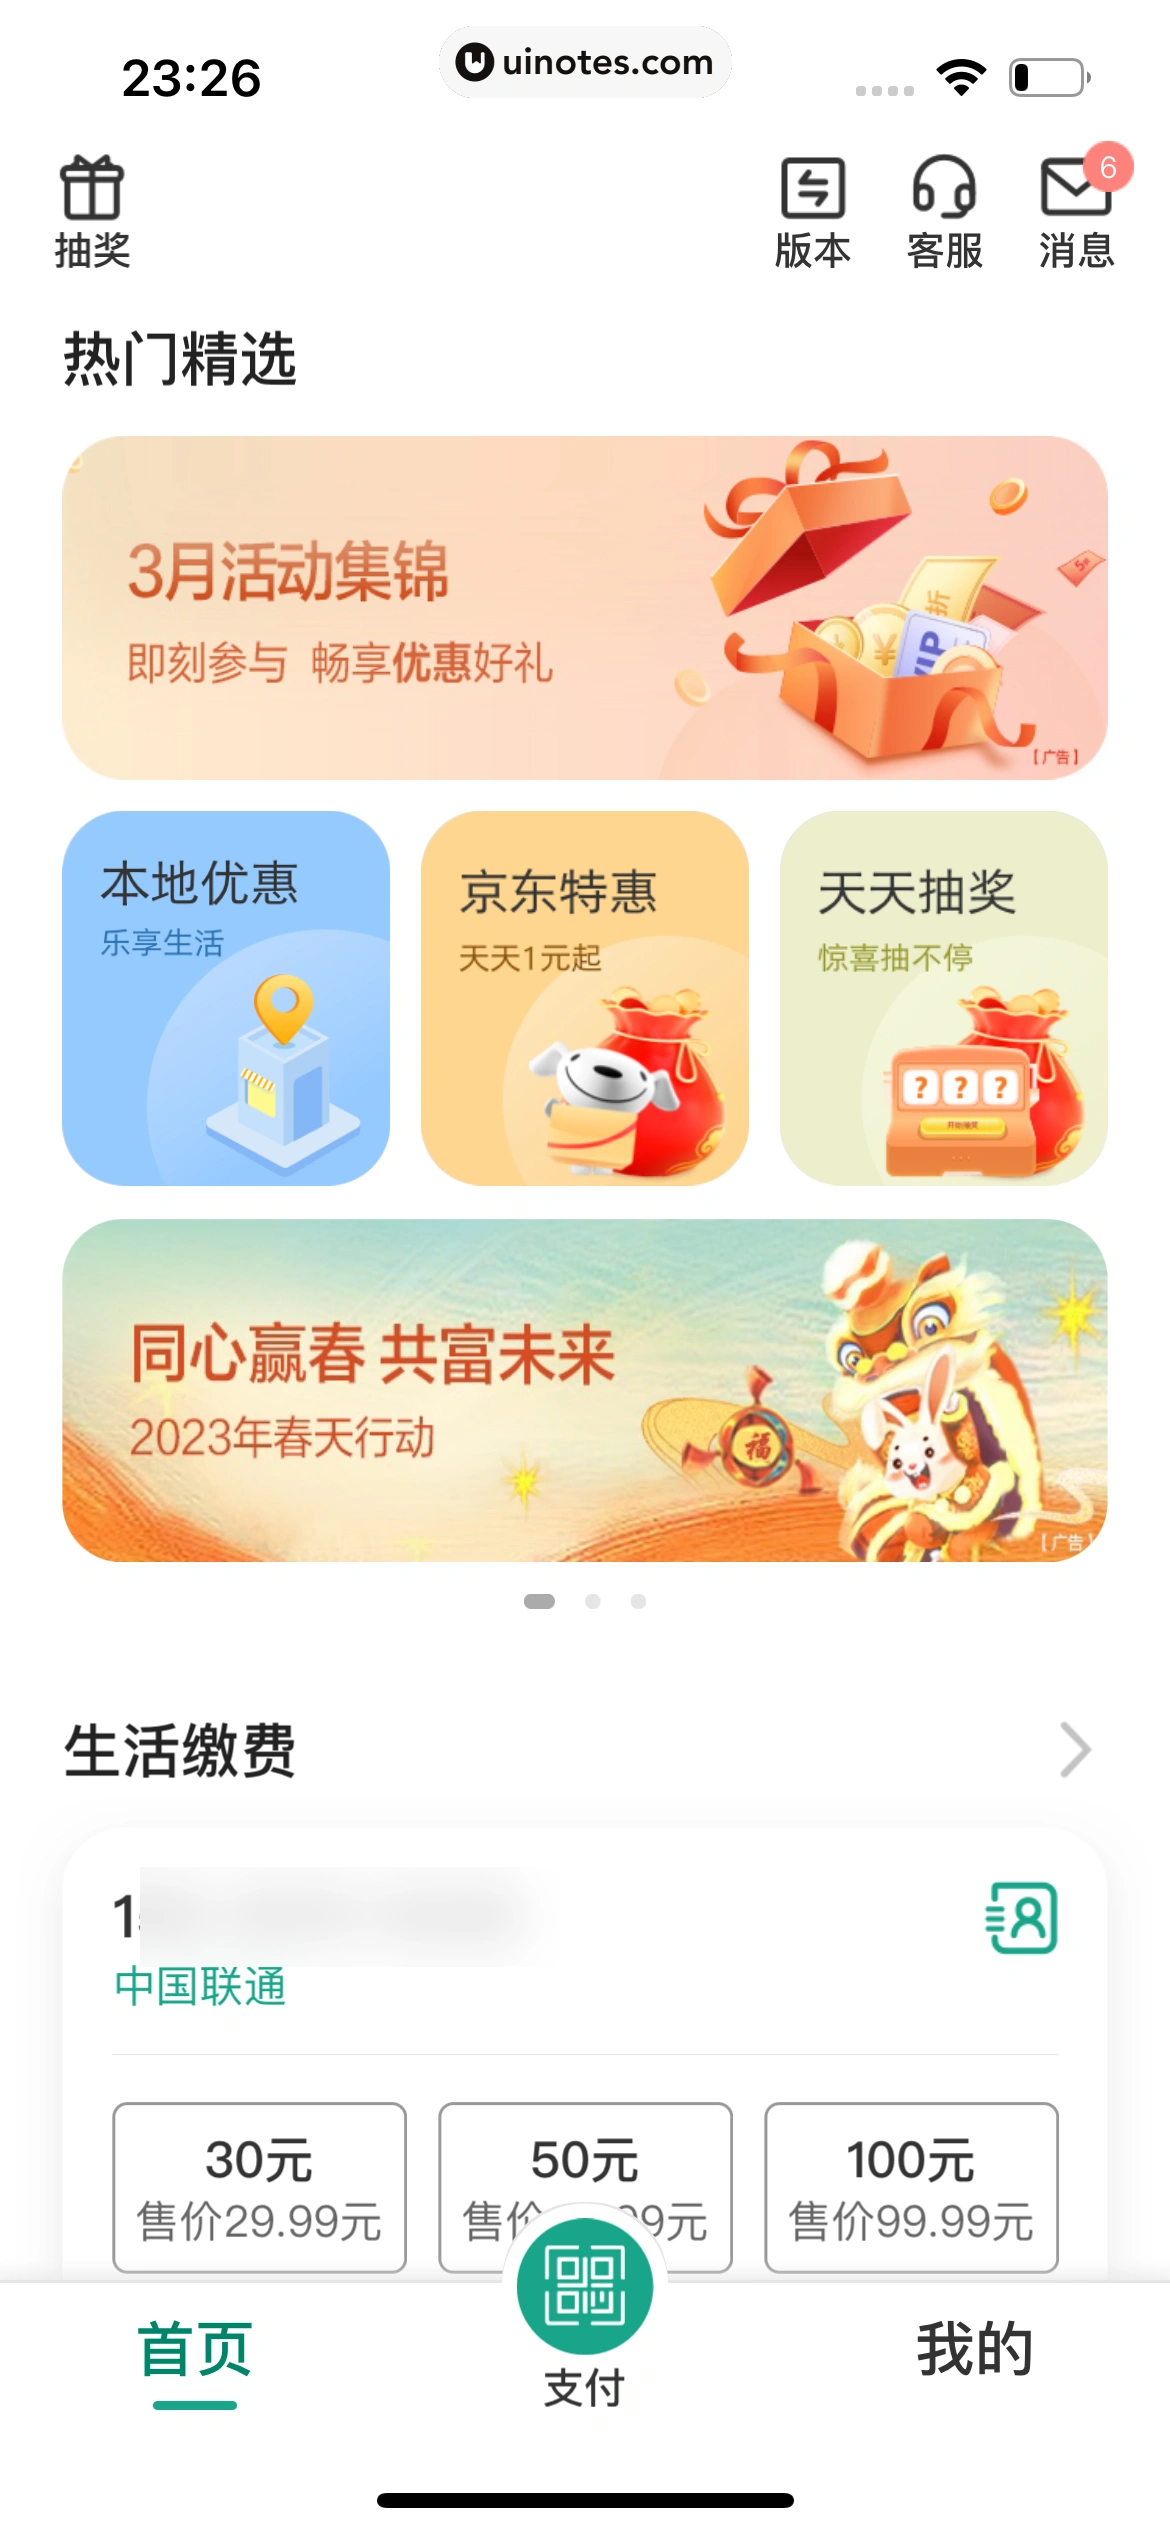 中国农业银行 App 截图 039 - UI Notes